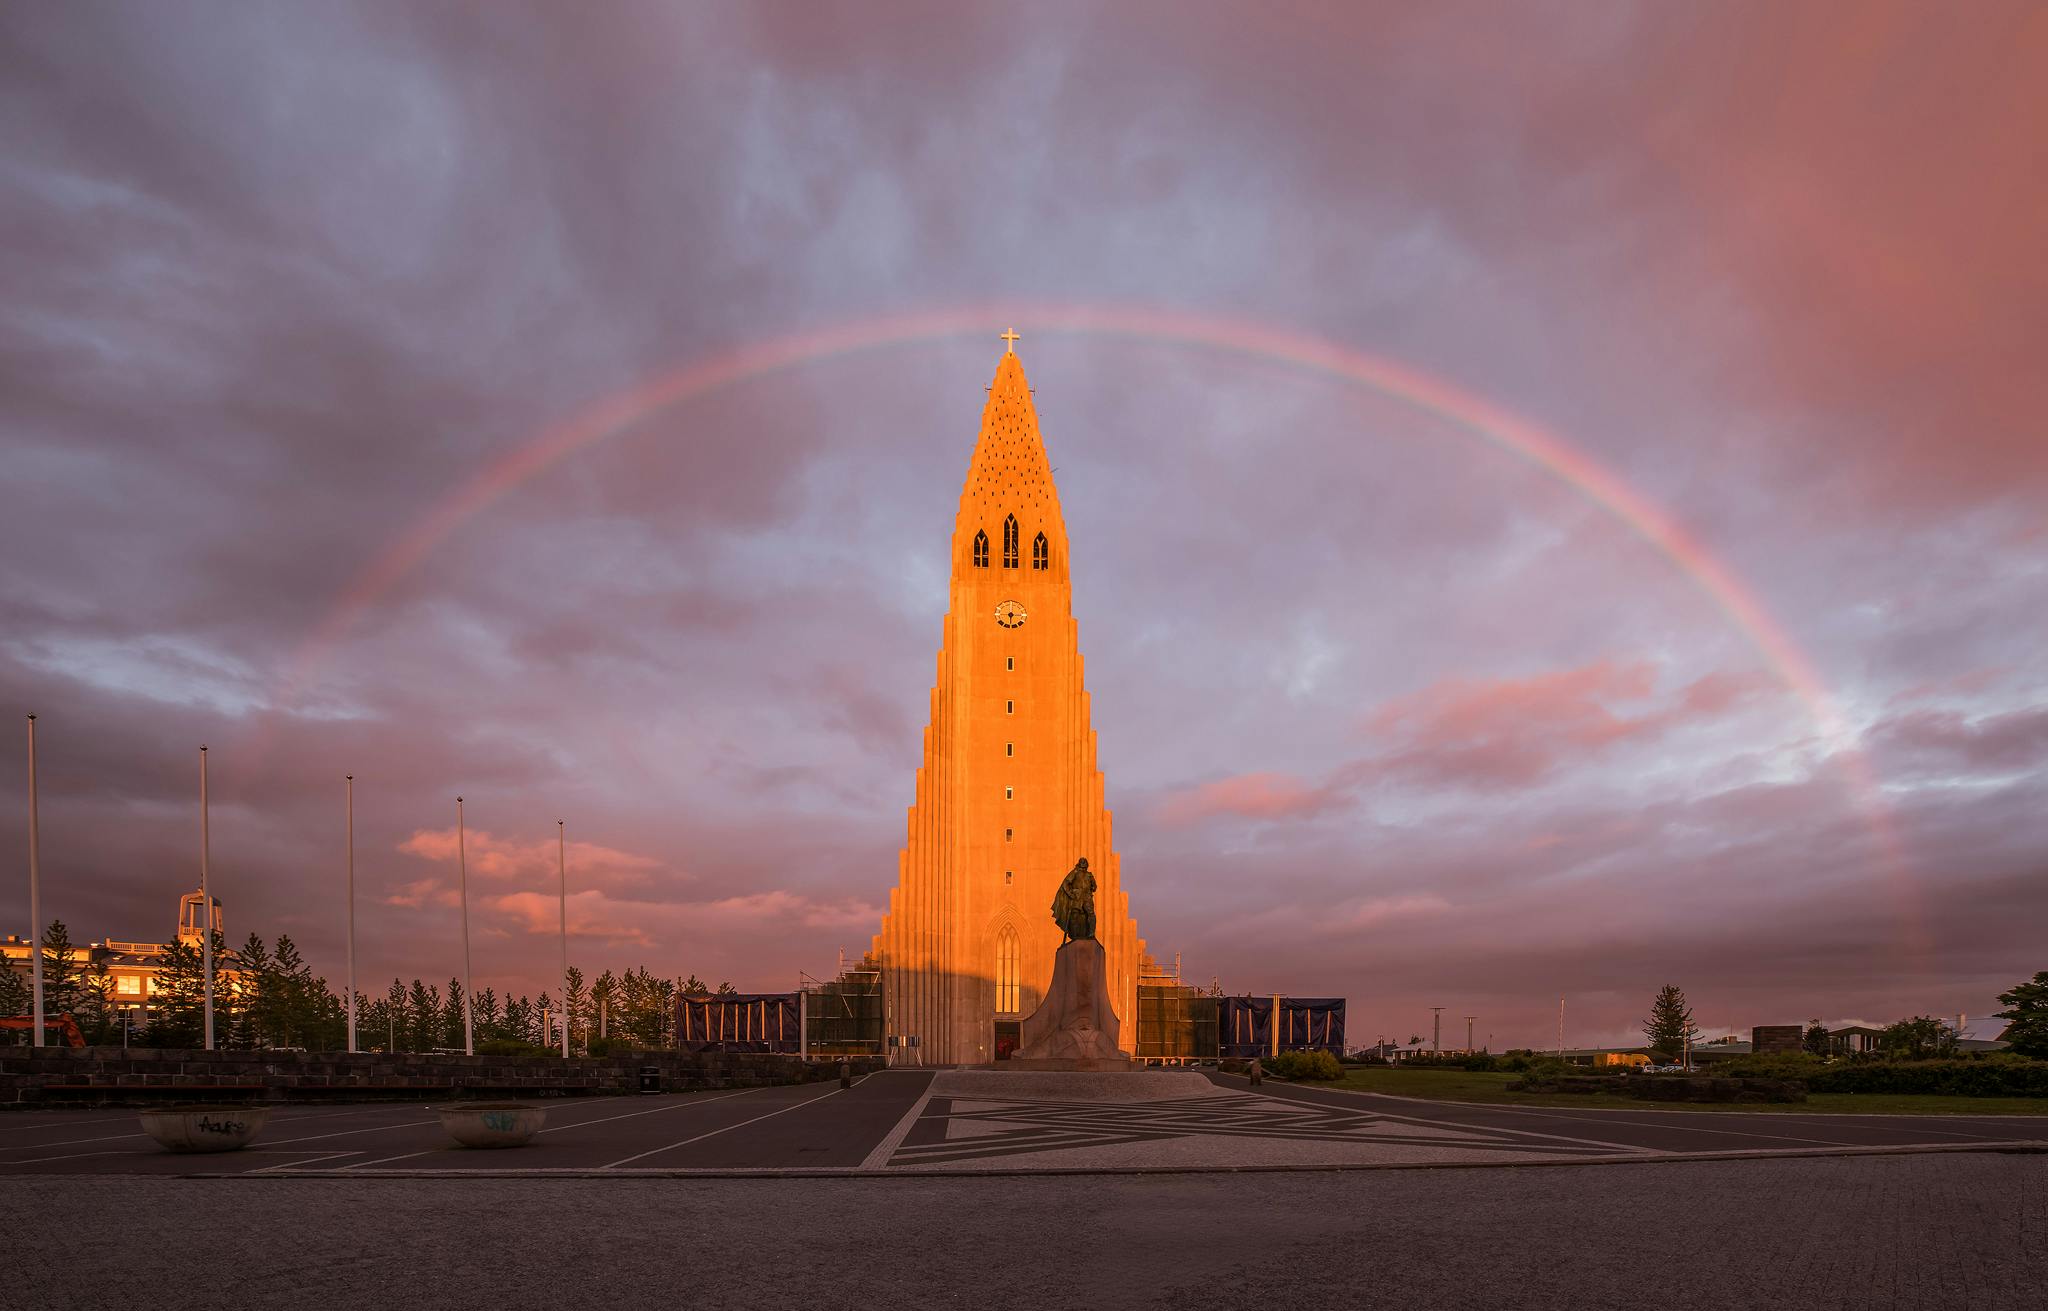 Kościół Hallgrimskirkja znajduje się w centrum Reykjaviku i z łatwością dostaniesz się do niego ze swojego hotelu.